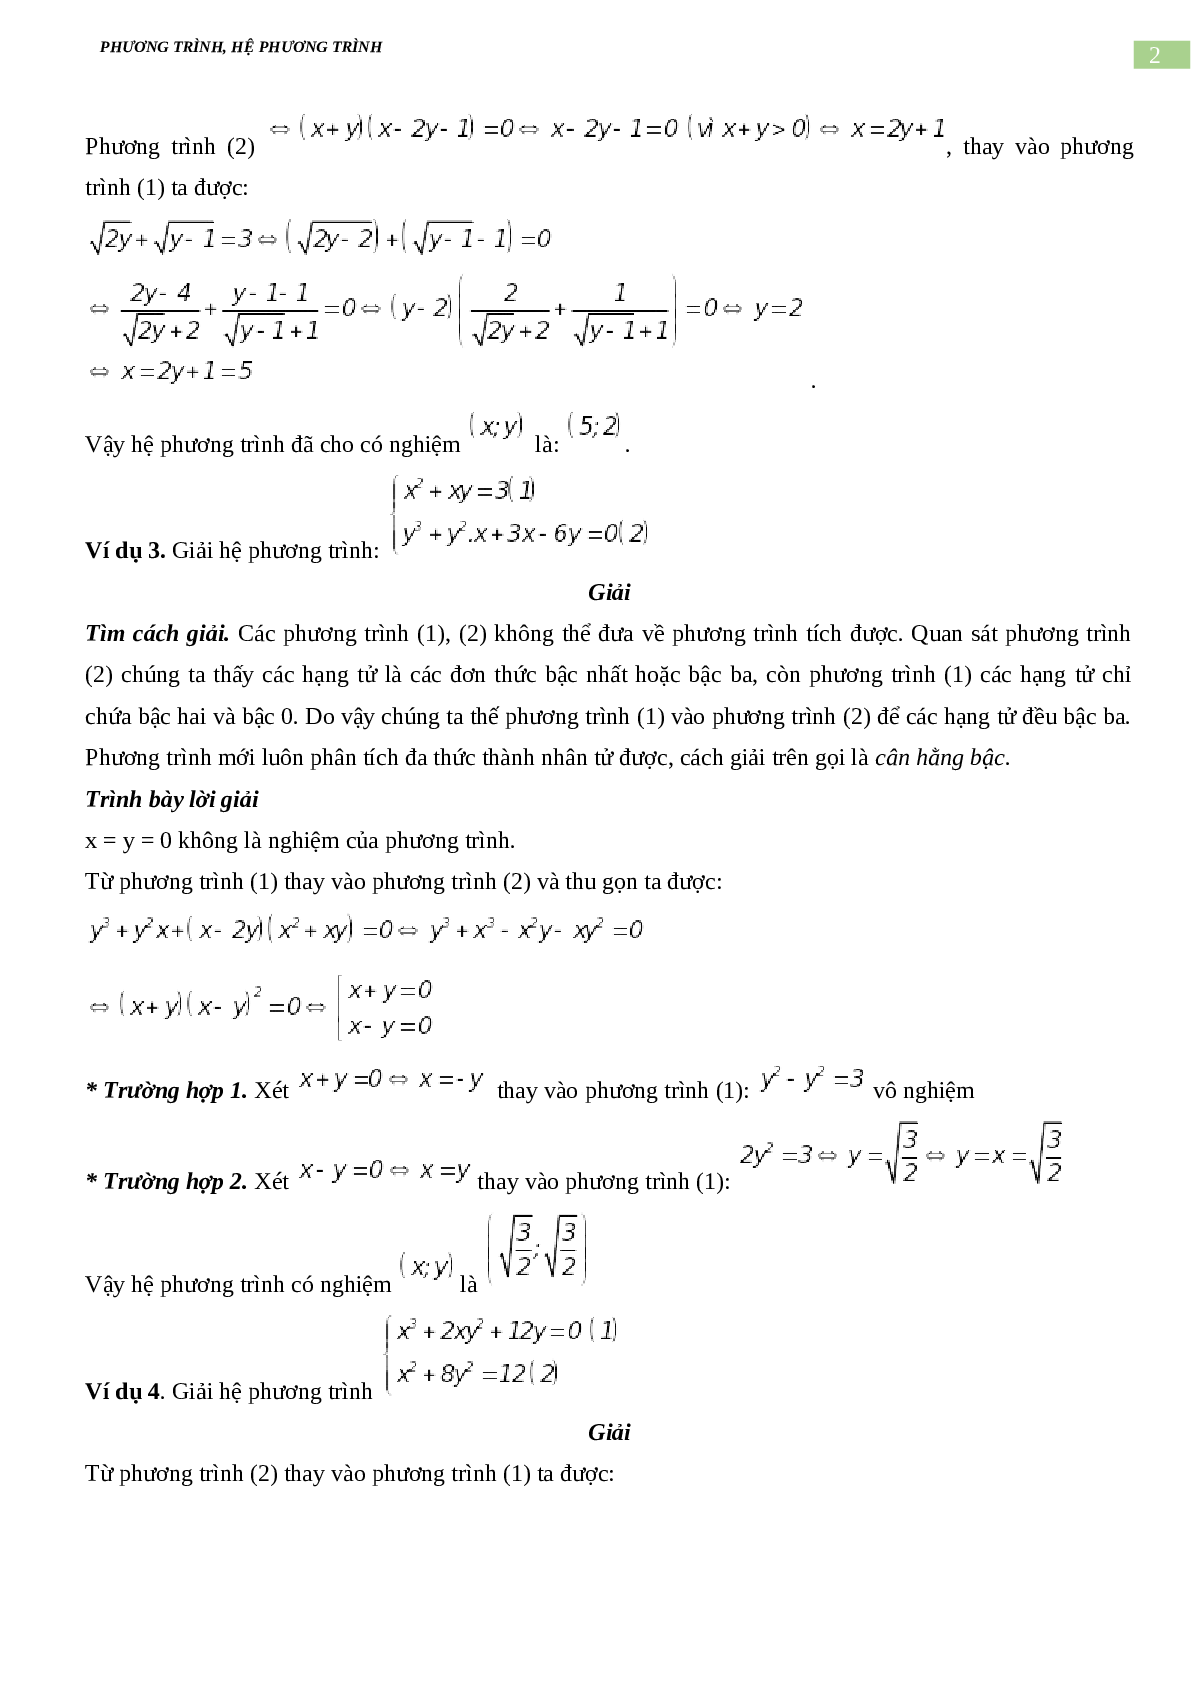 Bài tập về phương trình, hệ phương trình, bất phương trình không mẫu mực có đáp án, chọn lọc (trang 2)